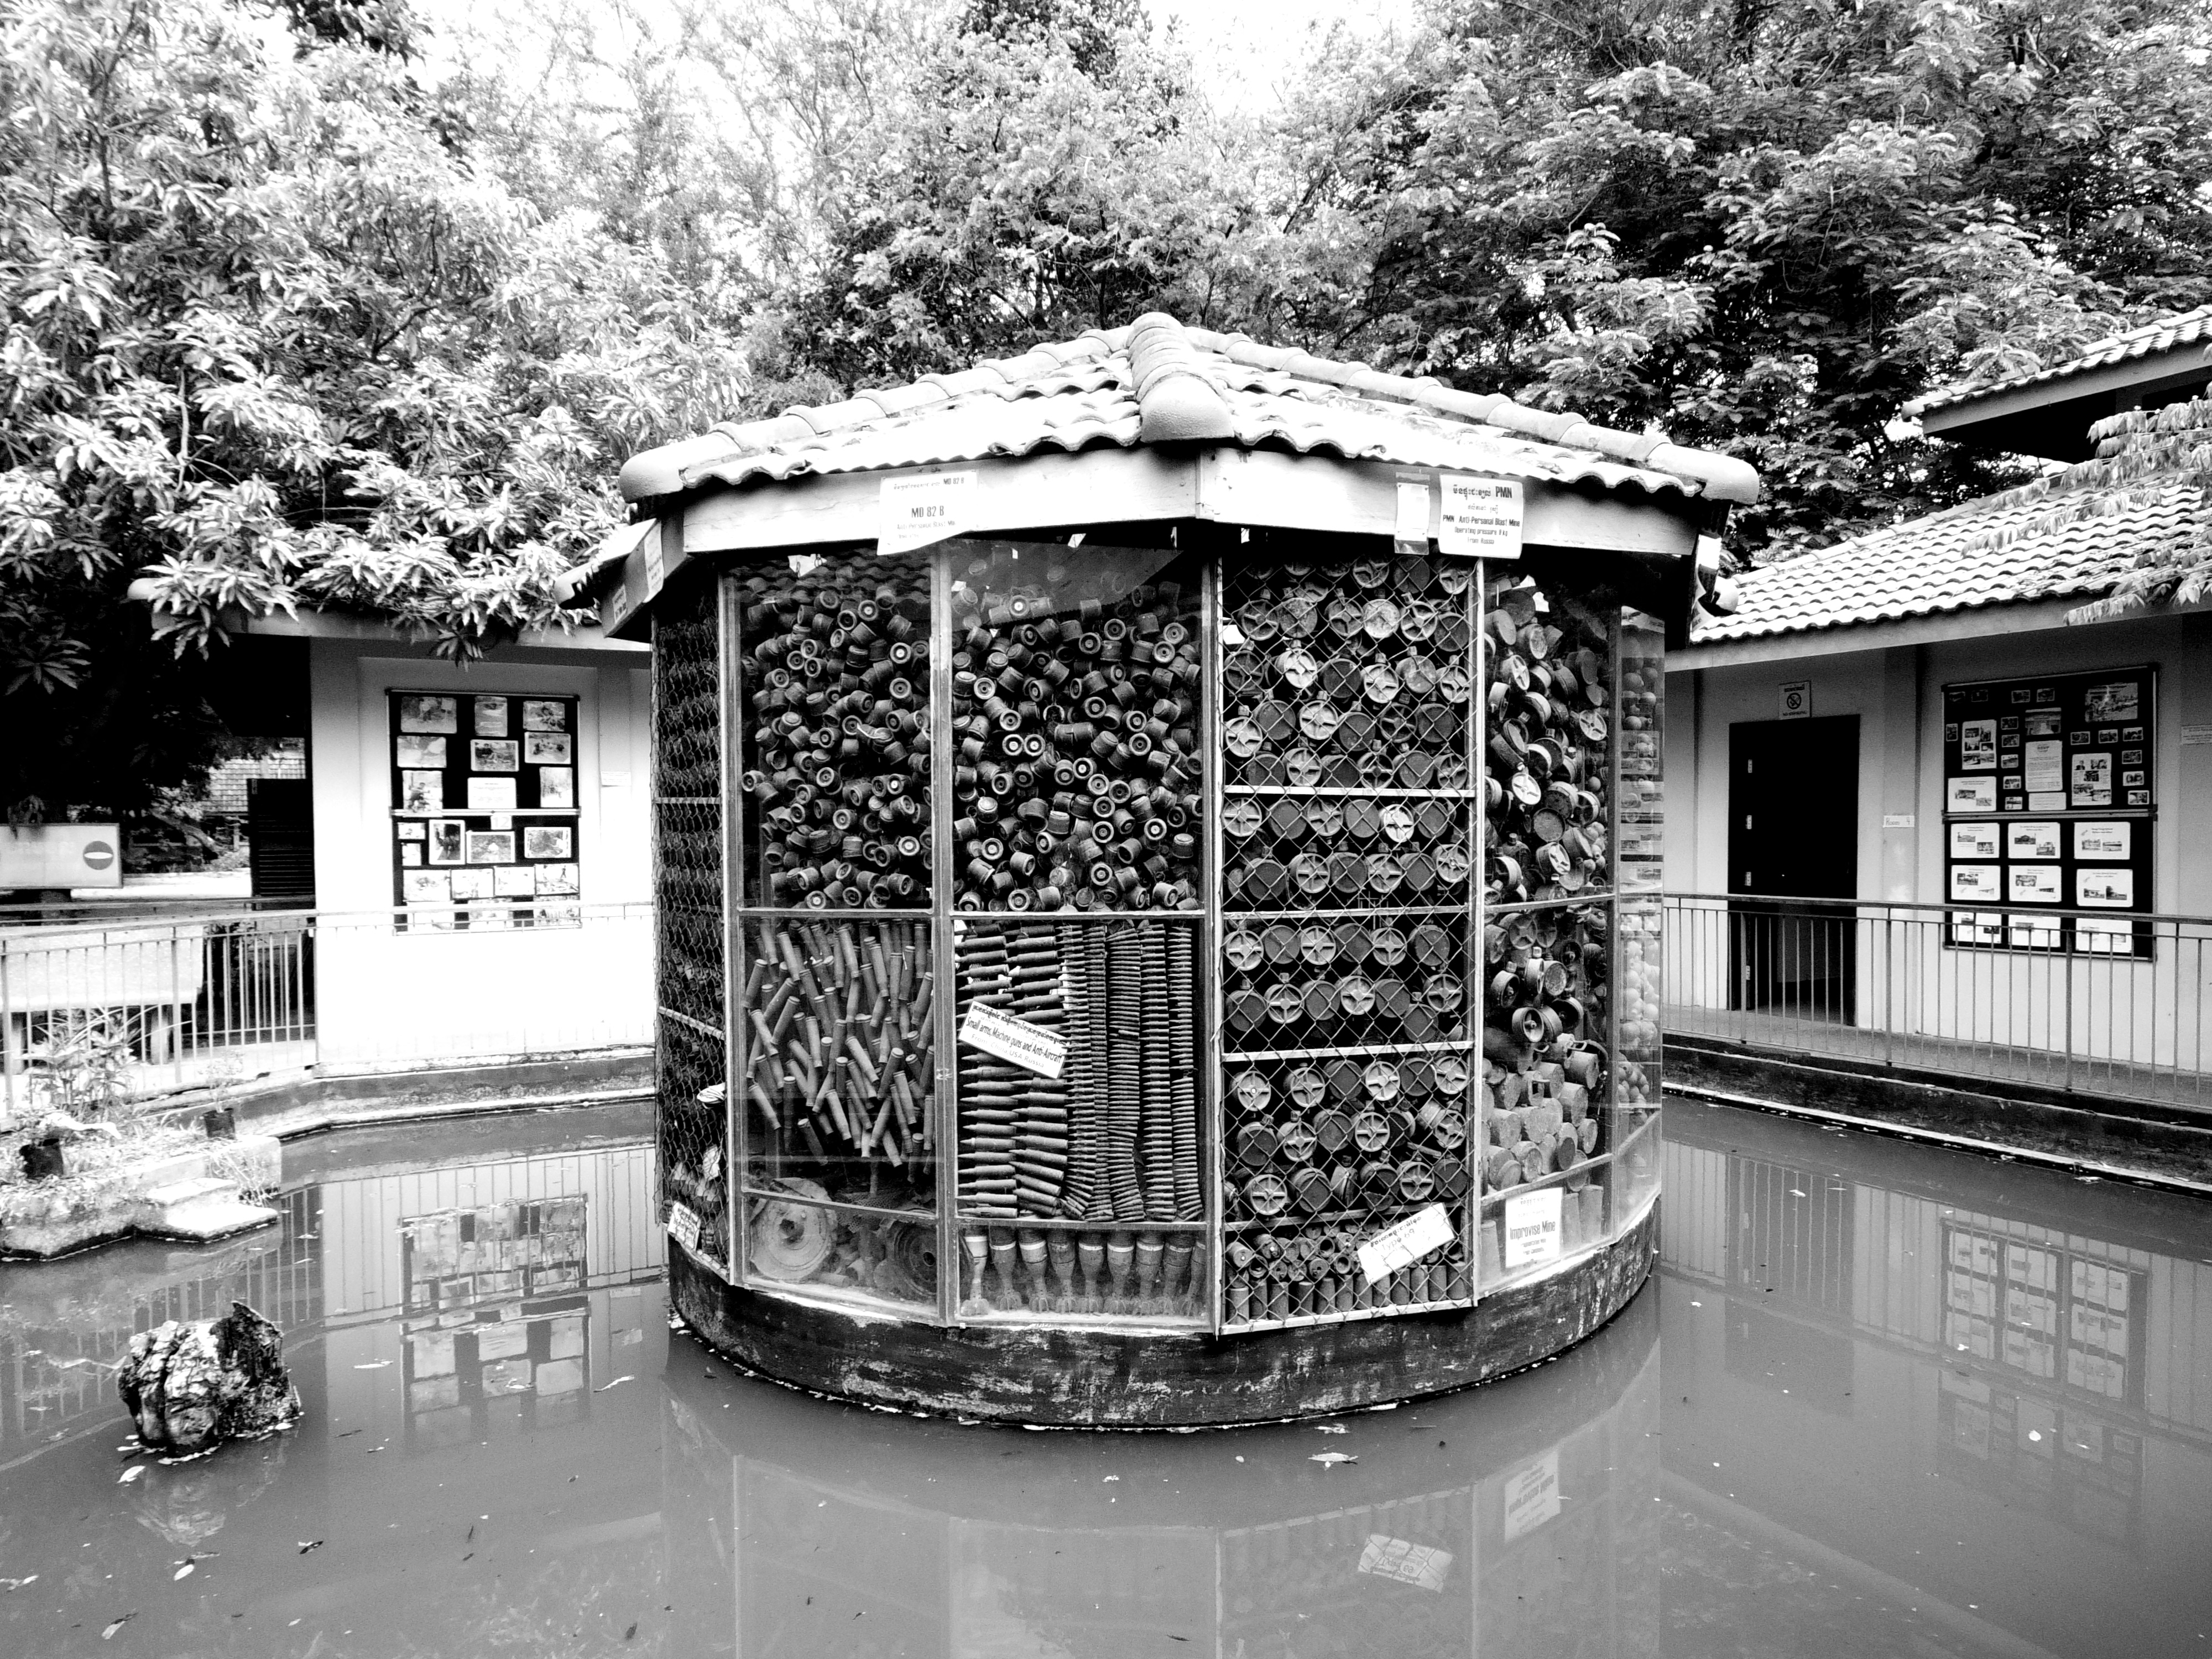 【アキラ地雷博物館】カンボジアの負の遺産。日本人ボランティアの川広さんと出逢う。